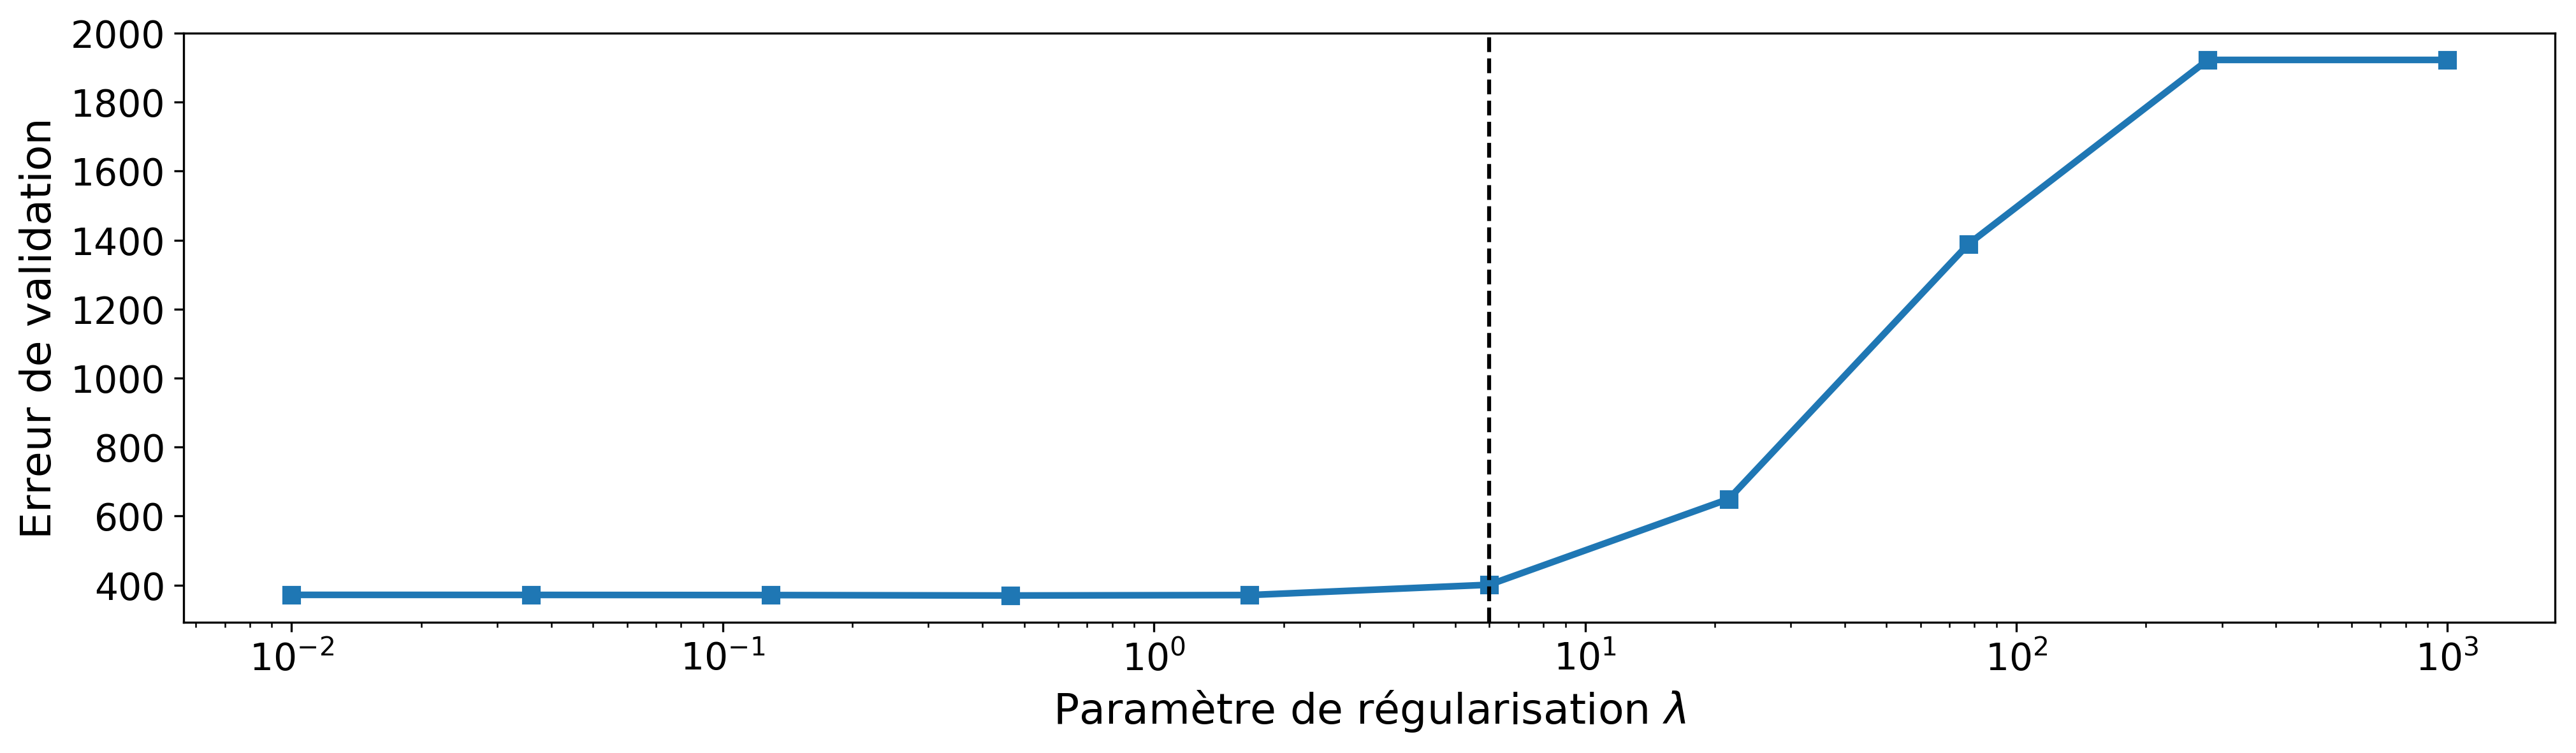 Critère de validation en fonction du paramètre de régularisation pour le lasso. La ligne en pointillé indique la valeur que nous avons retenue.